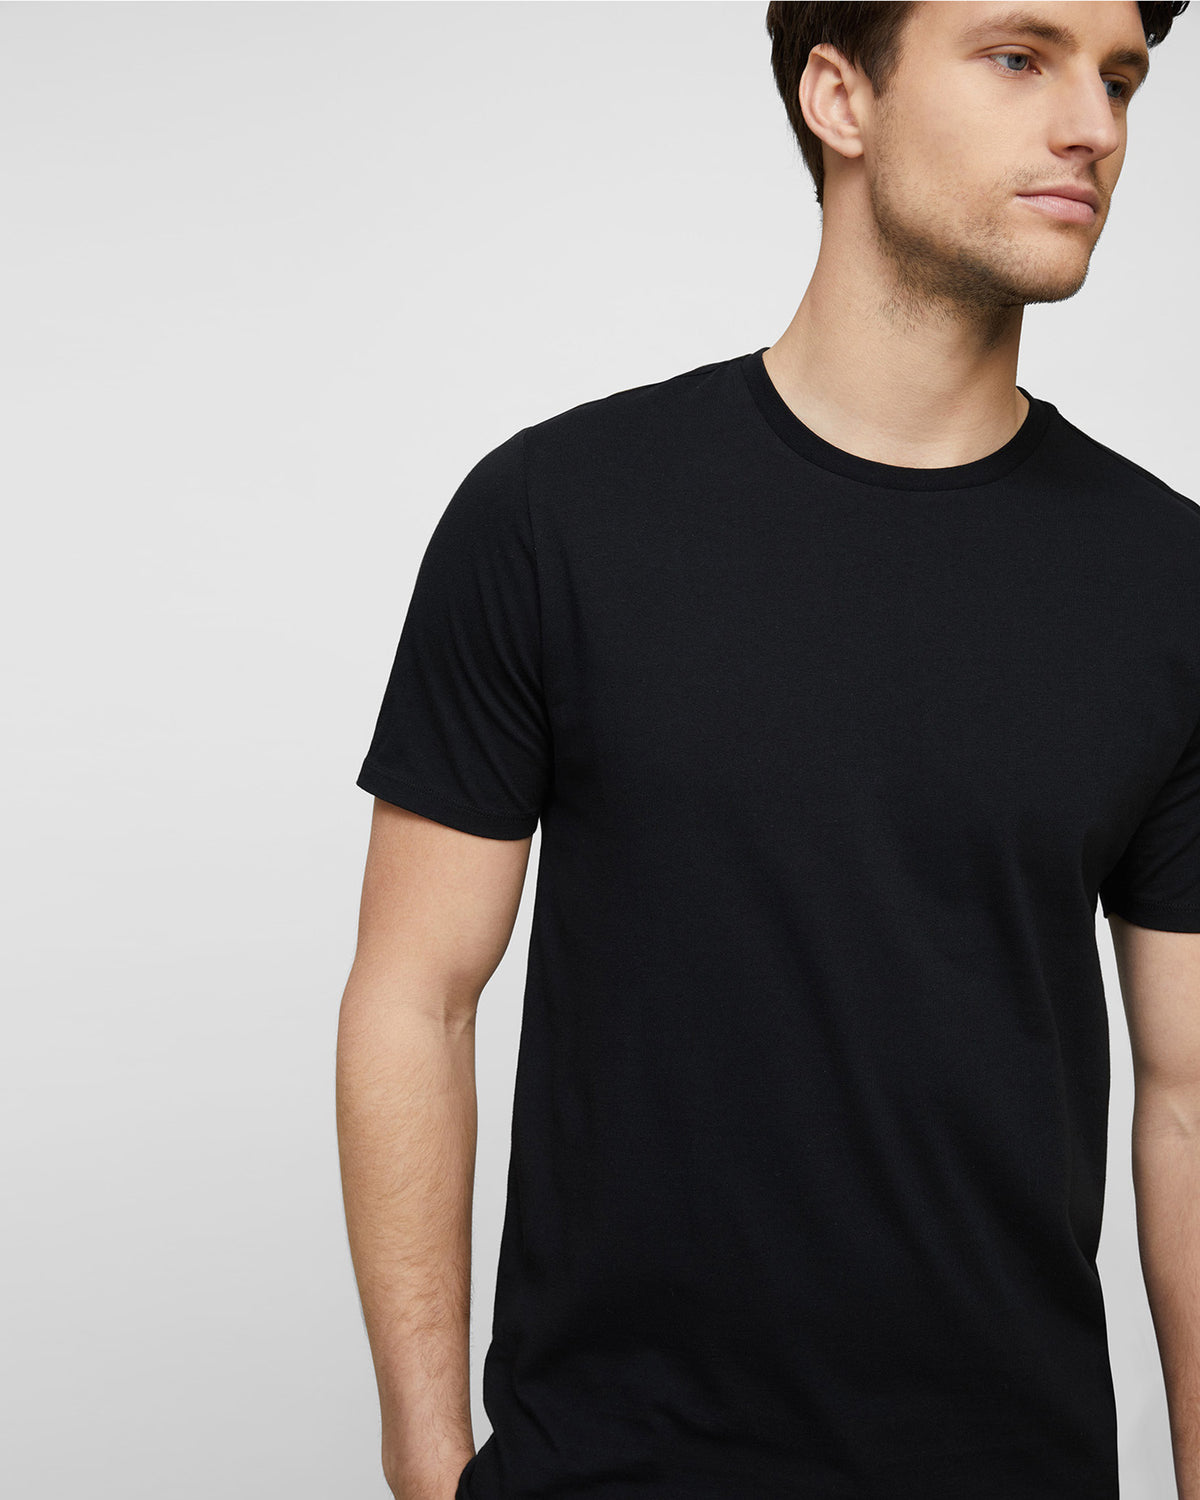 MEN'S CREW TEES | Basic T-Shirts | Wayver Black Cotton Tee - Wayver ...